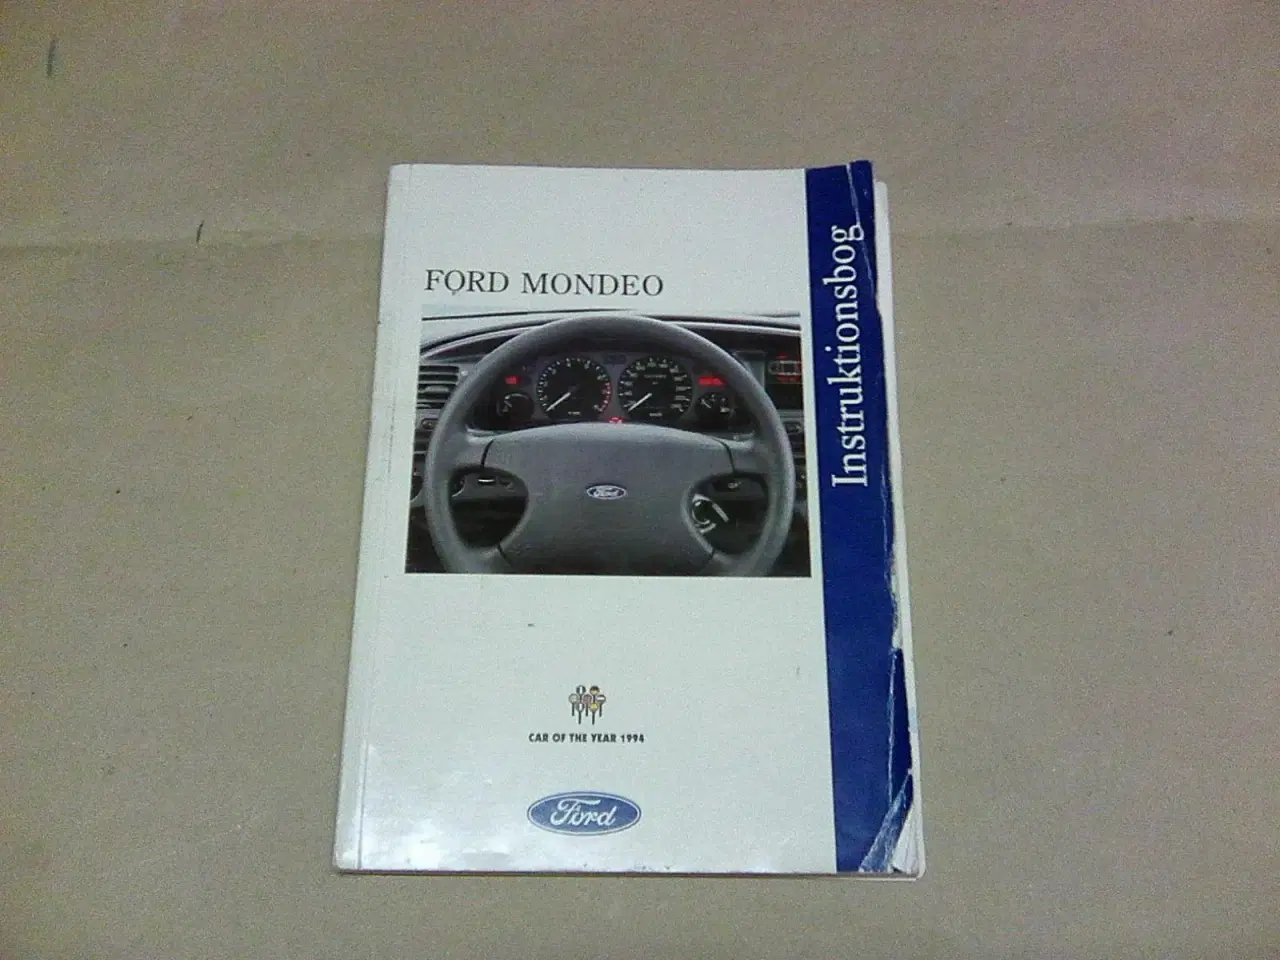 Billede 4 - Instruktion's Bøger til bil og andet køretøj